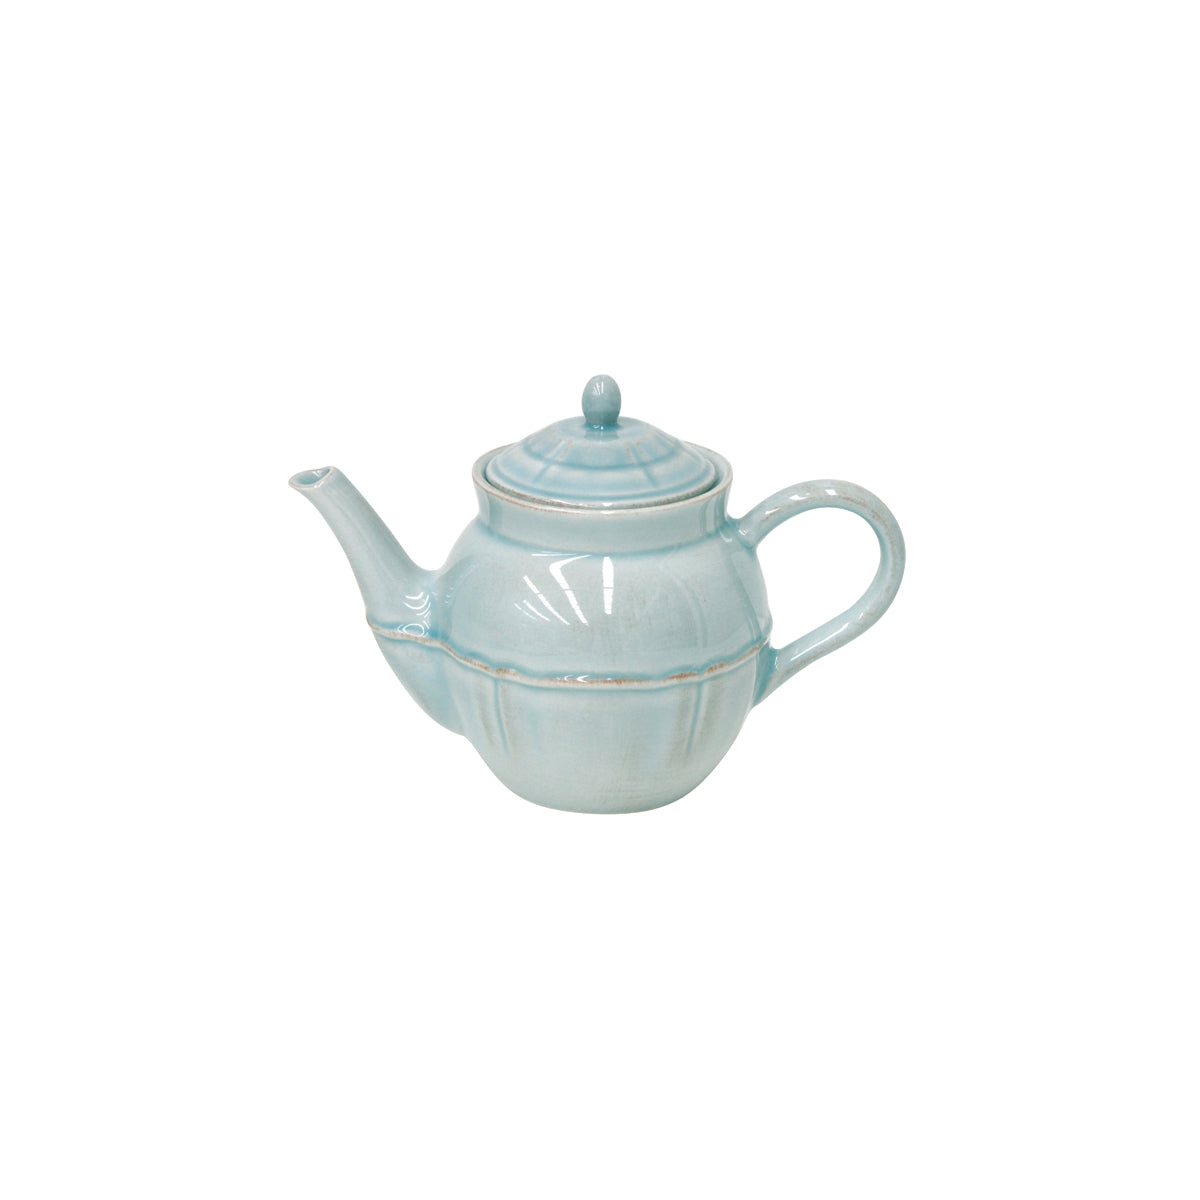 300060 Costa Nova Alentejo Turquoise Teapot 510ml Tomkin Australia Hospitality Supplies